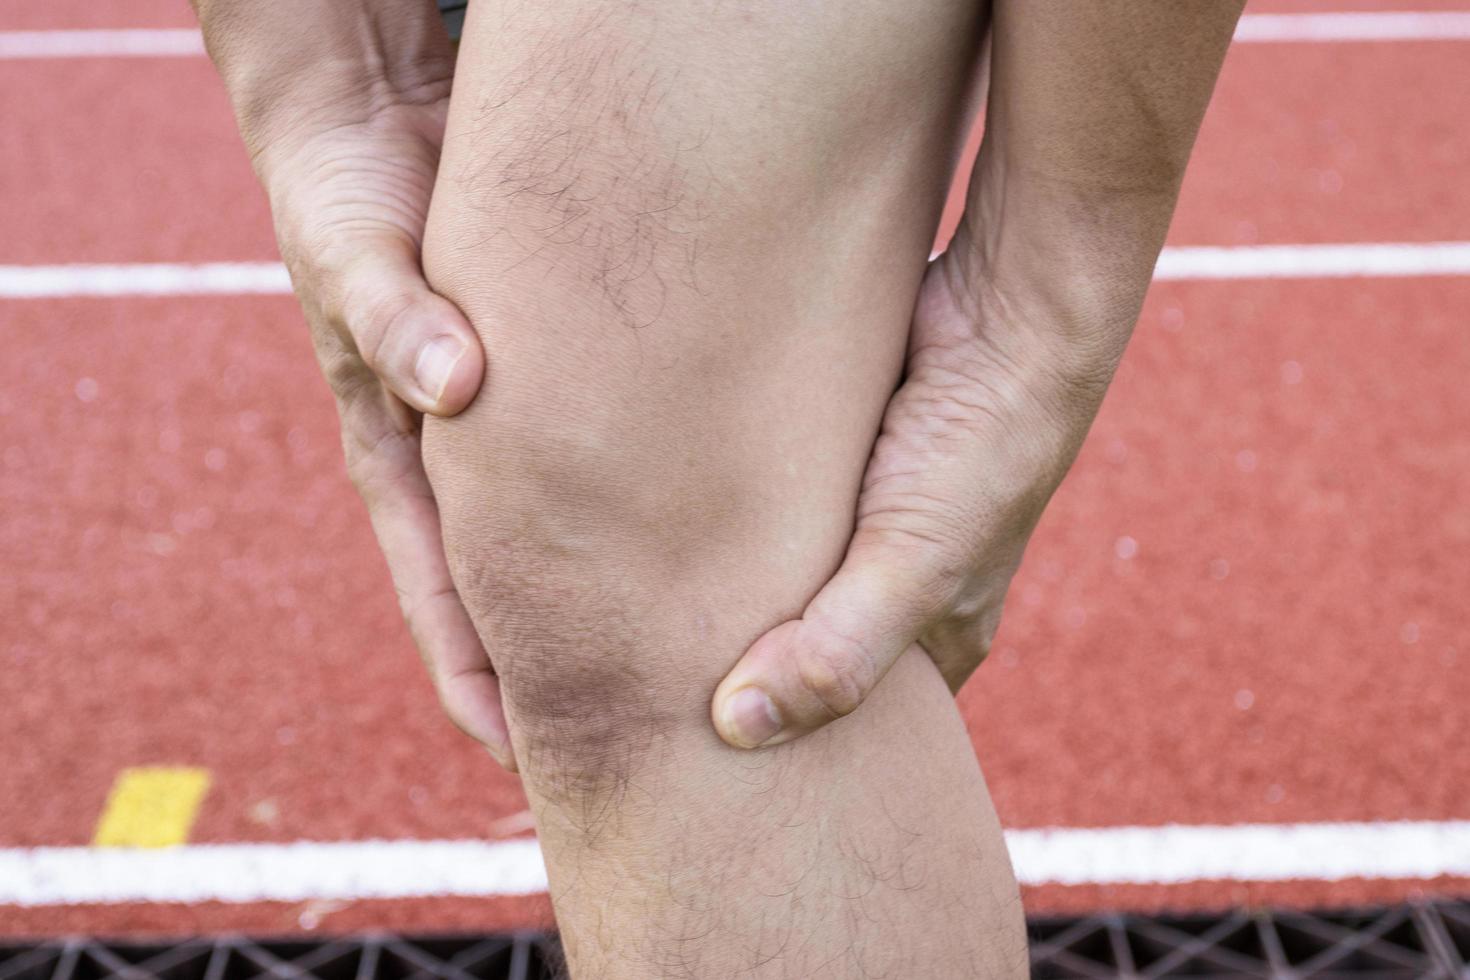 Sehnenkniegelenksprobleme am Bein des Mannes durch Übung im Stadion. foto